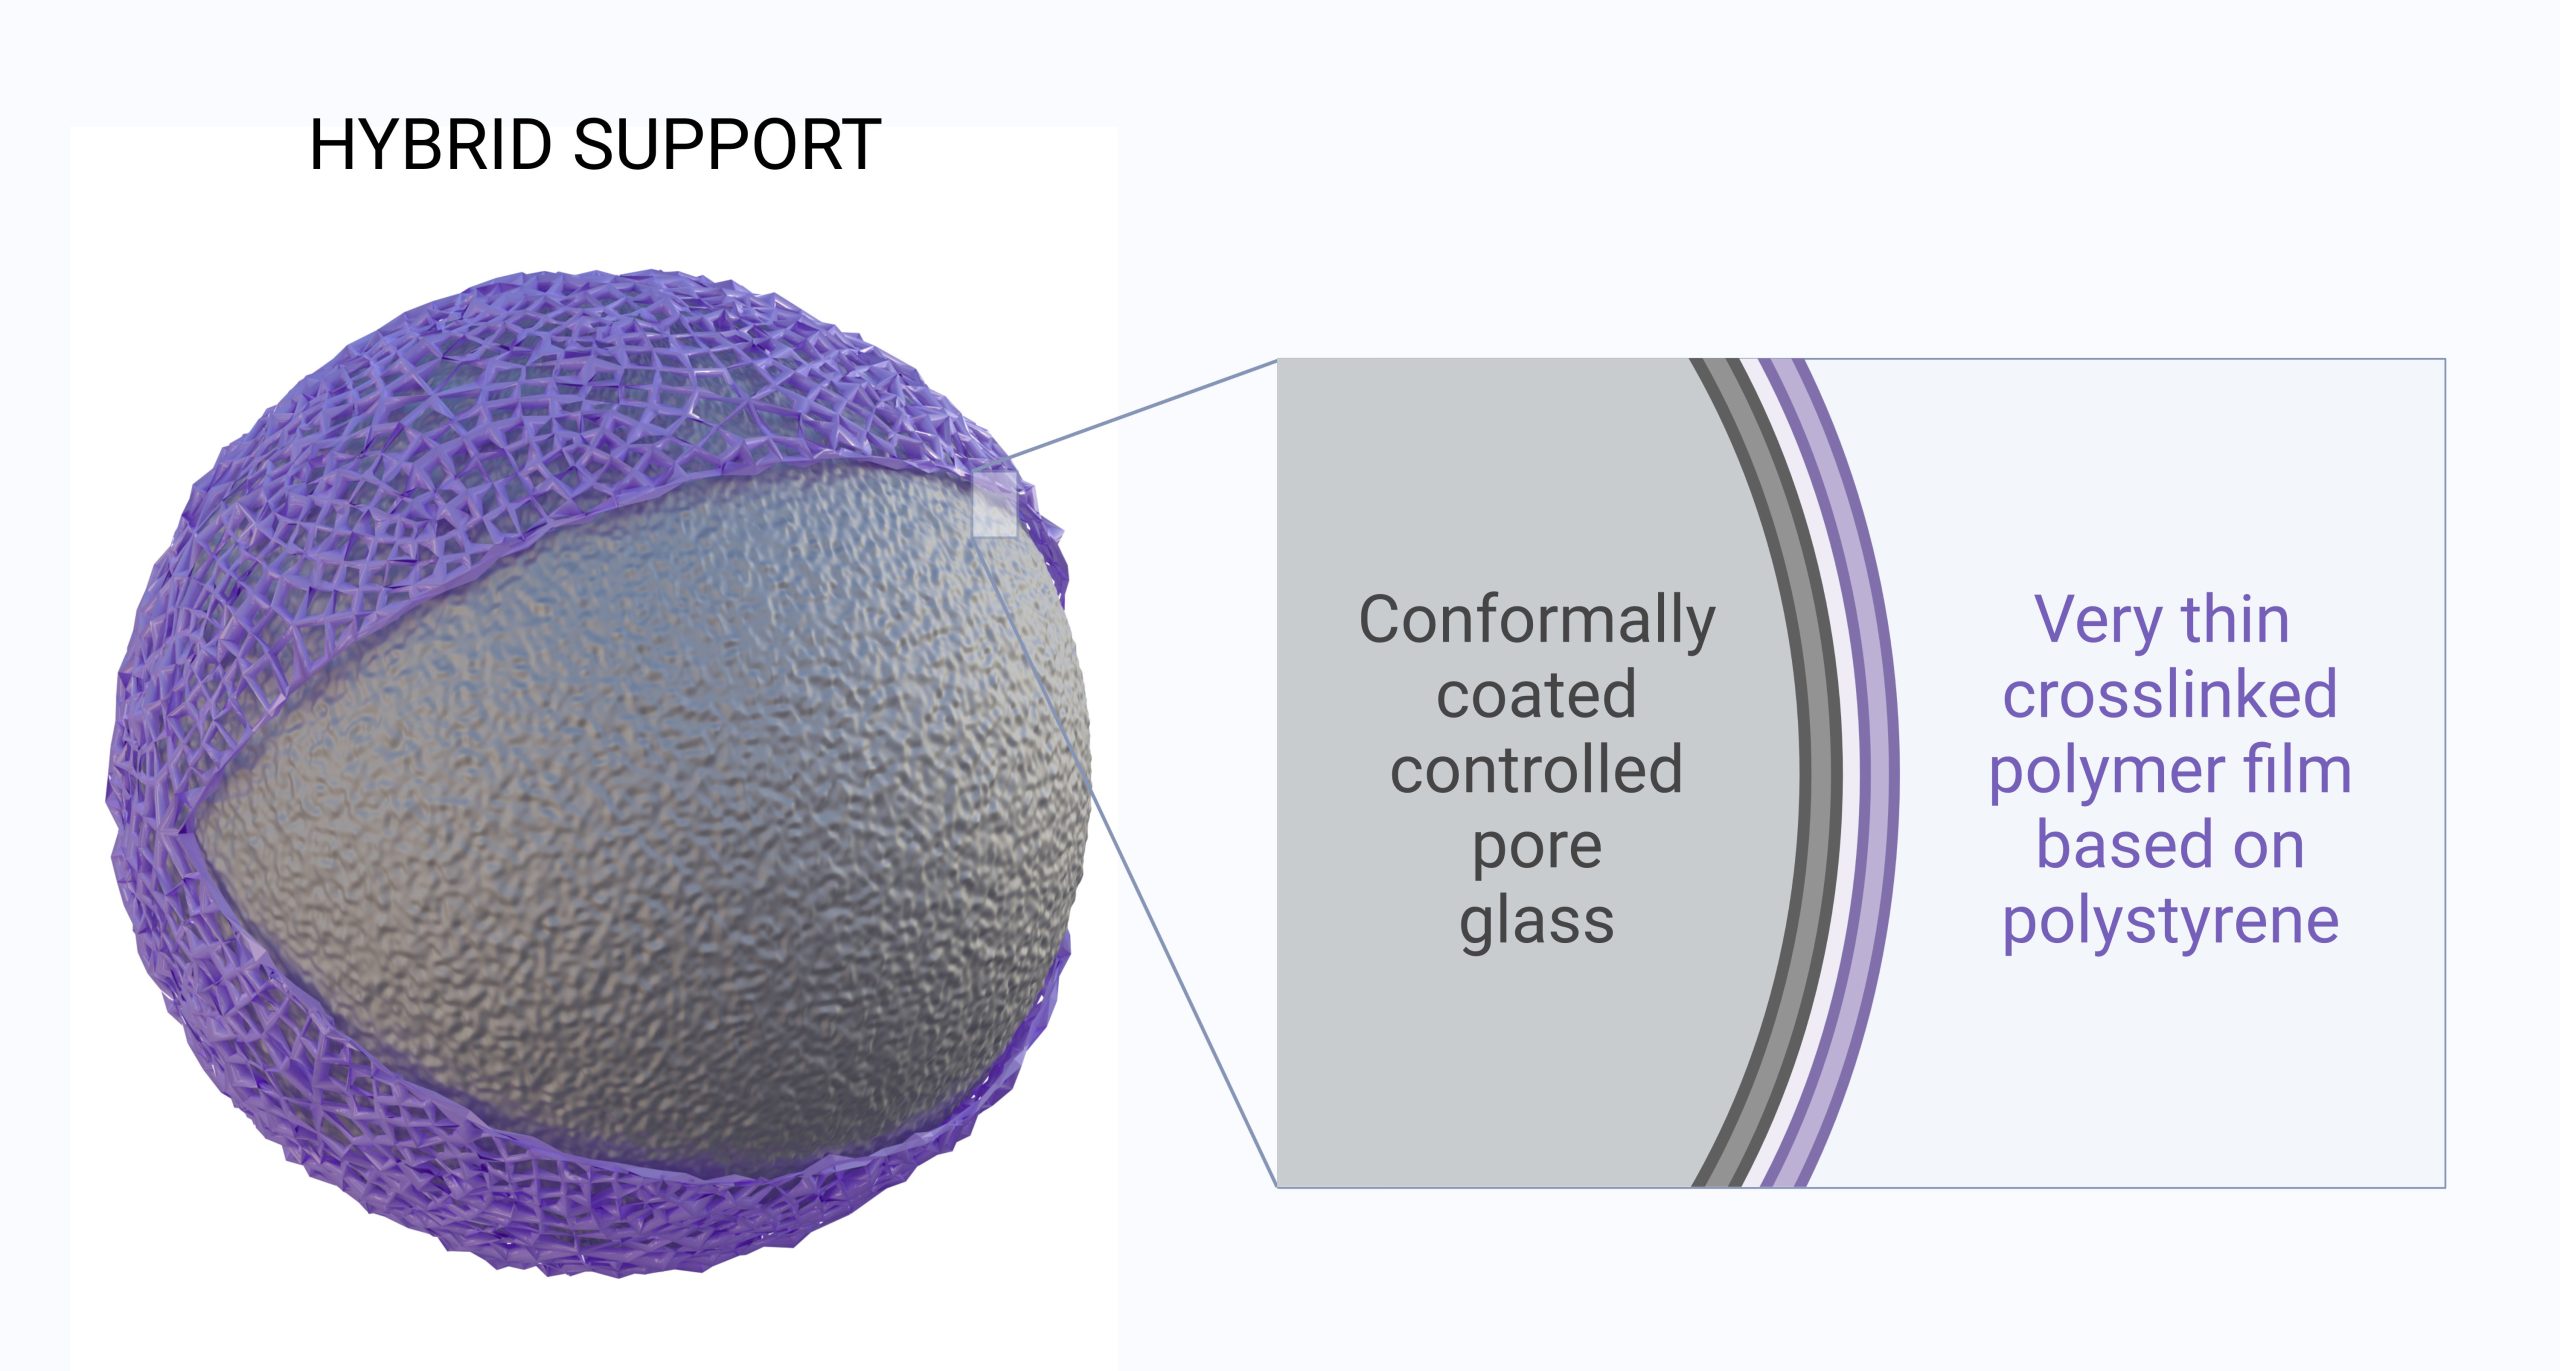 Wizualizacja koncepcyjna podłoża hybrydowego – CPG powlekanego polimerem 